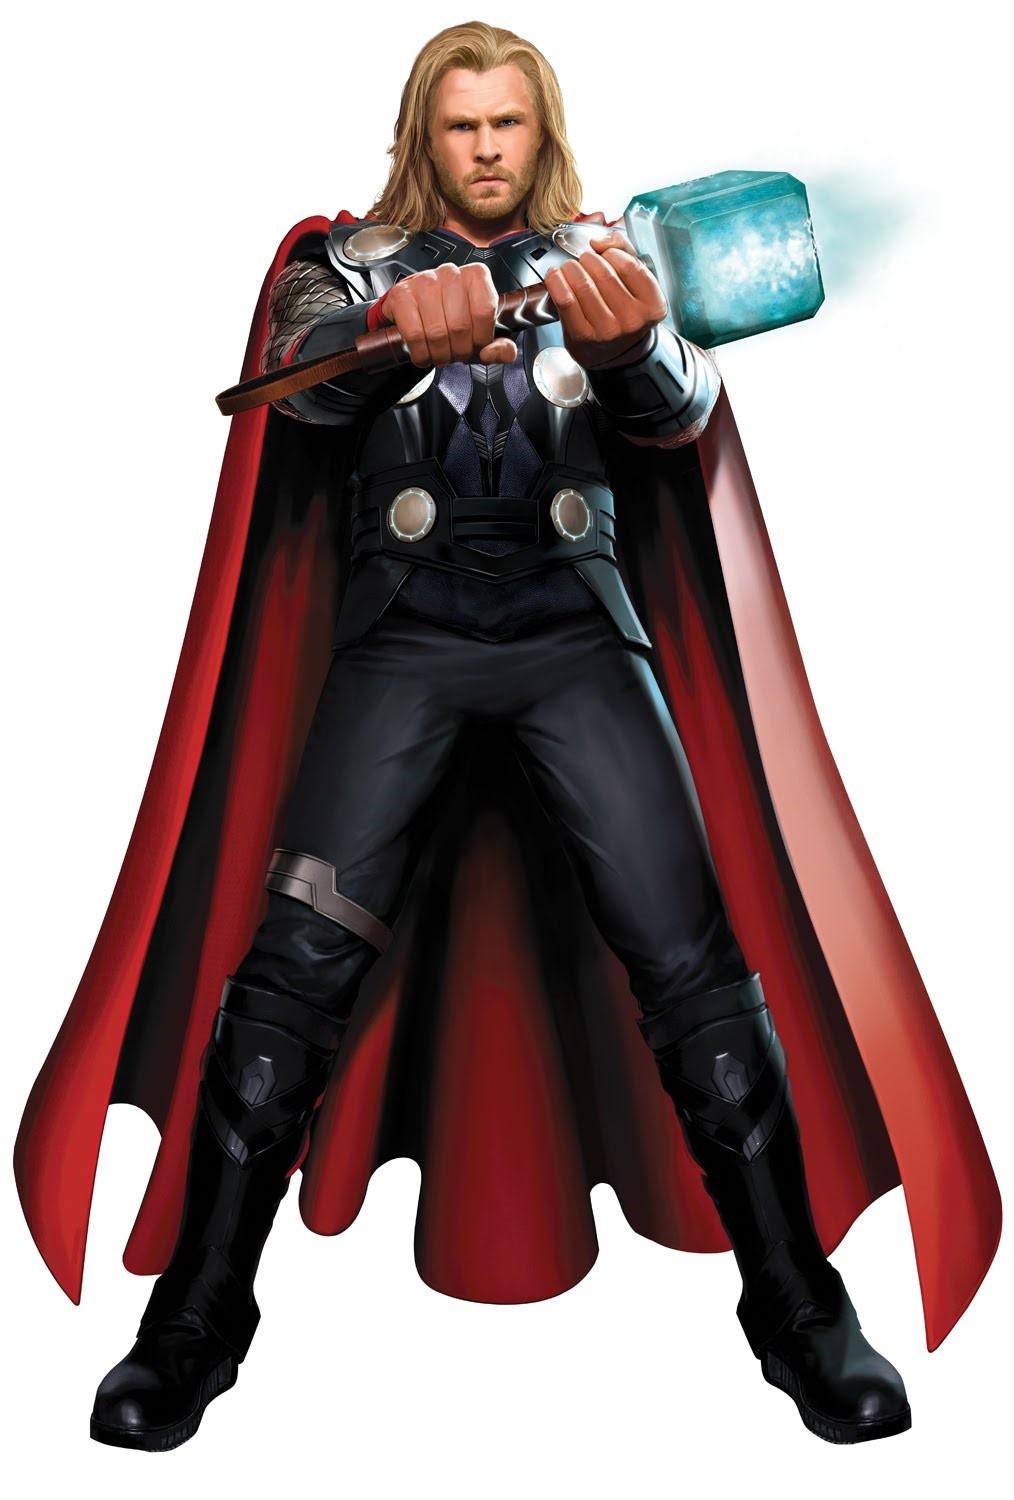 Thor is my hero!! My favorite superhero is Thor.